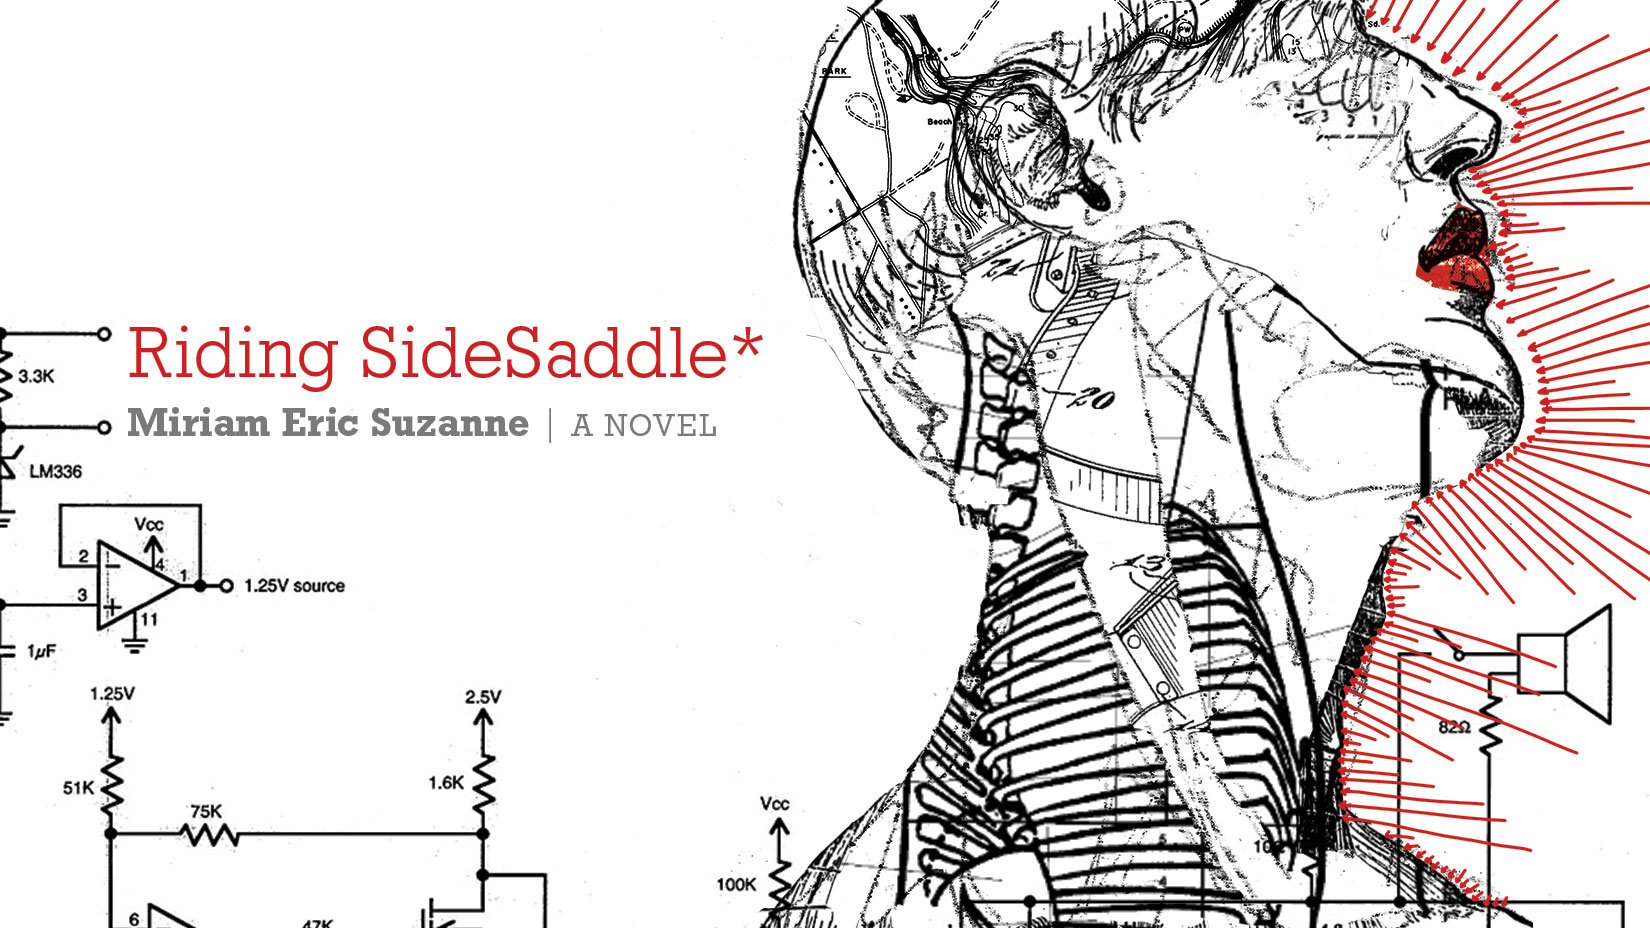 Riding SideSaddle*